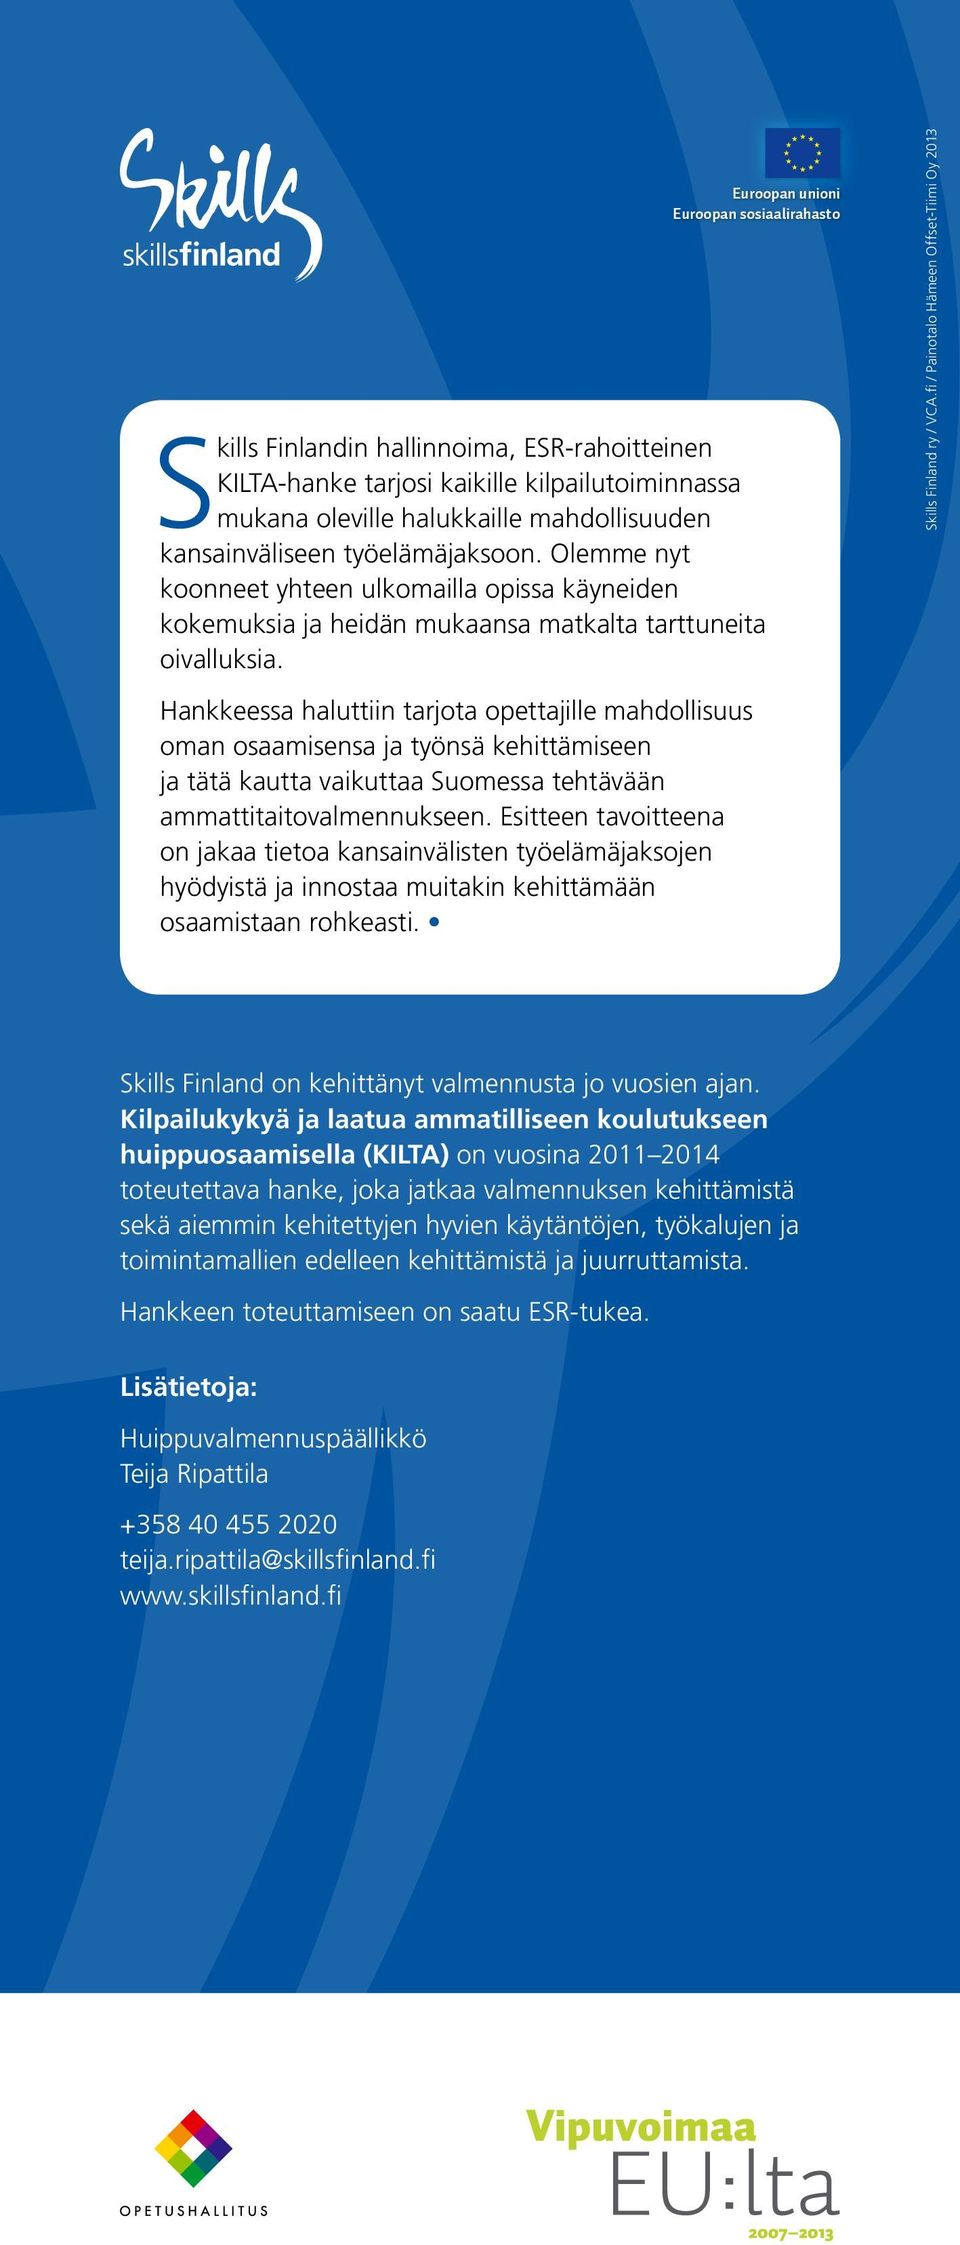 Hankkeessa haluttiin tarjota opettajille mahdollisuus oman osaamisensa ja työnsä kehittämiseen ja tätä kautta vaikuttaa Suomessa tehtävään ammattitaitovalmennukseen.